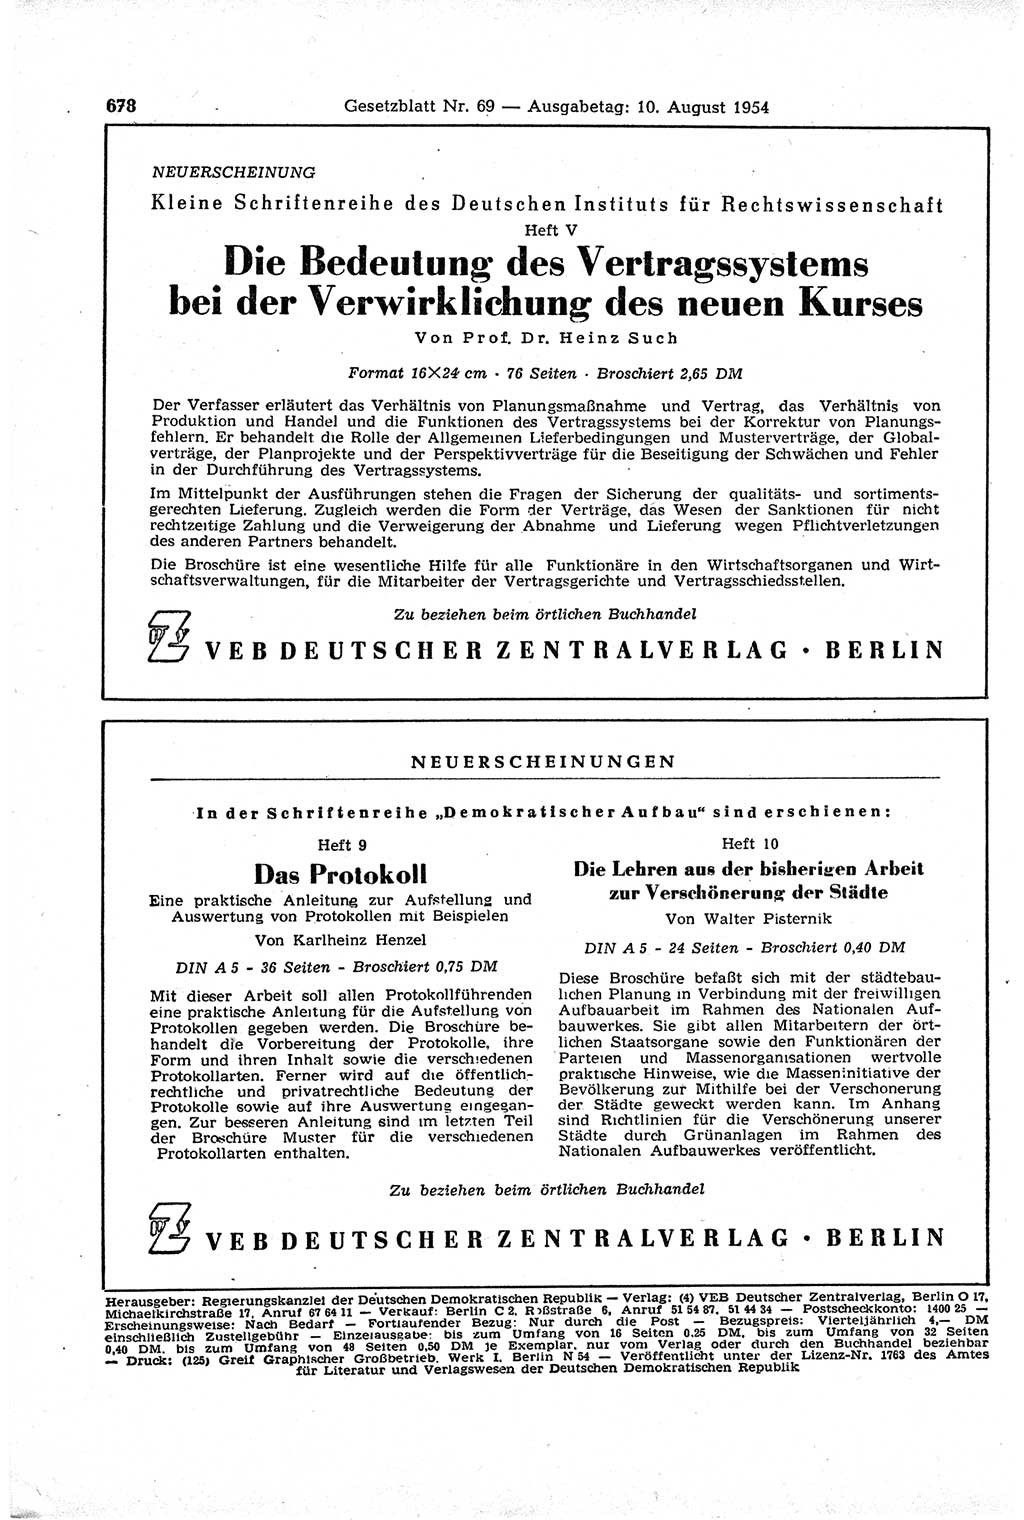 Gesetzblatt (GBl.) der Deutschen Demokratischen Republik (DDR) 1954, Seite 678 (GBl. DDR 1954, S. 678)